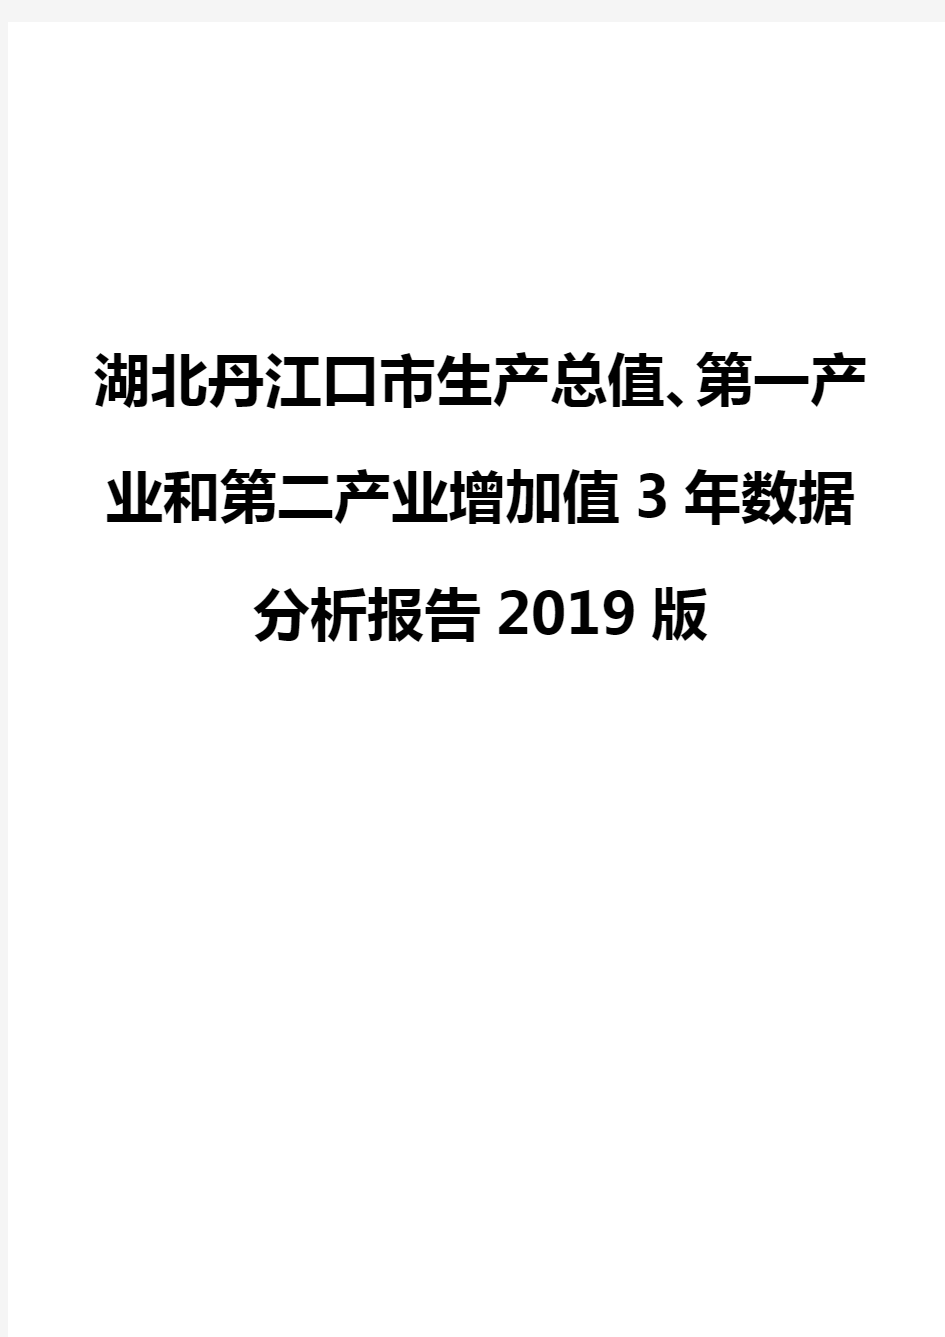 湖北丹江口市生产总值、第一产业和第二产业增加值3年数据分析报告2019版